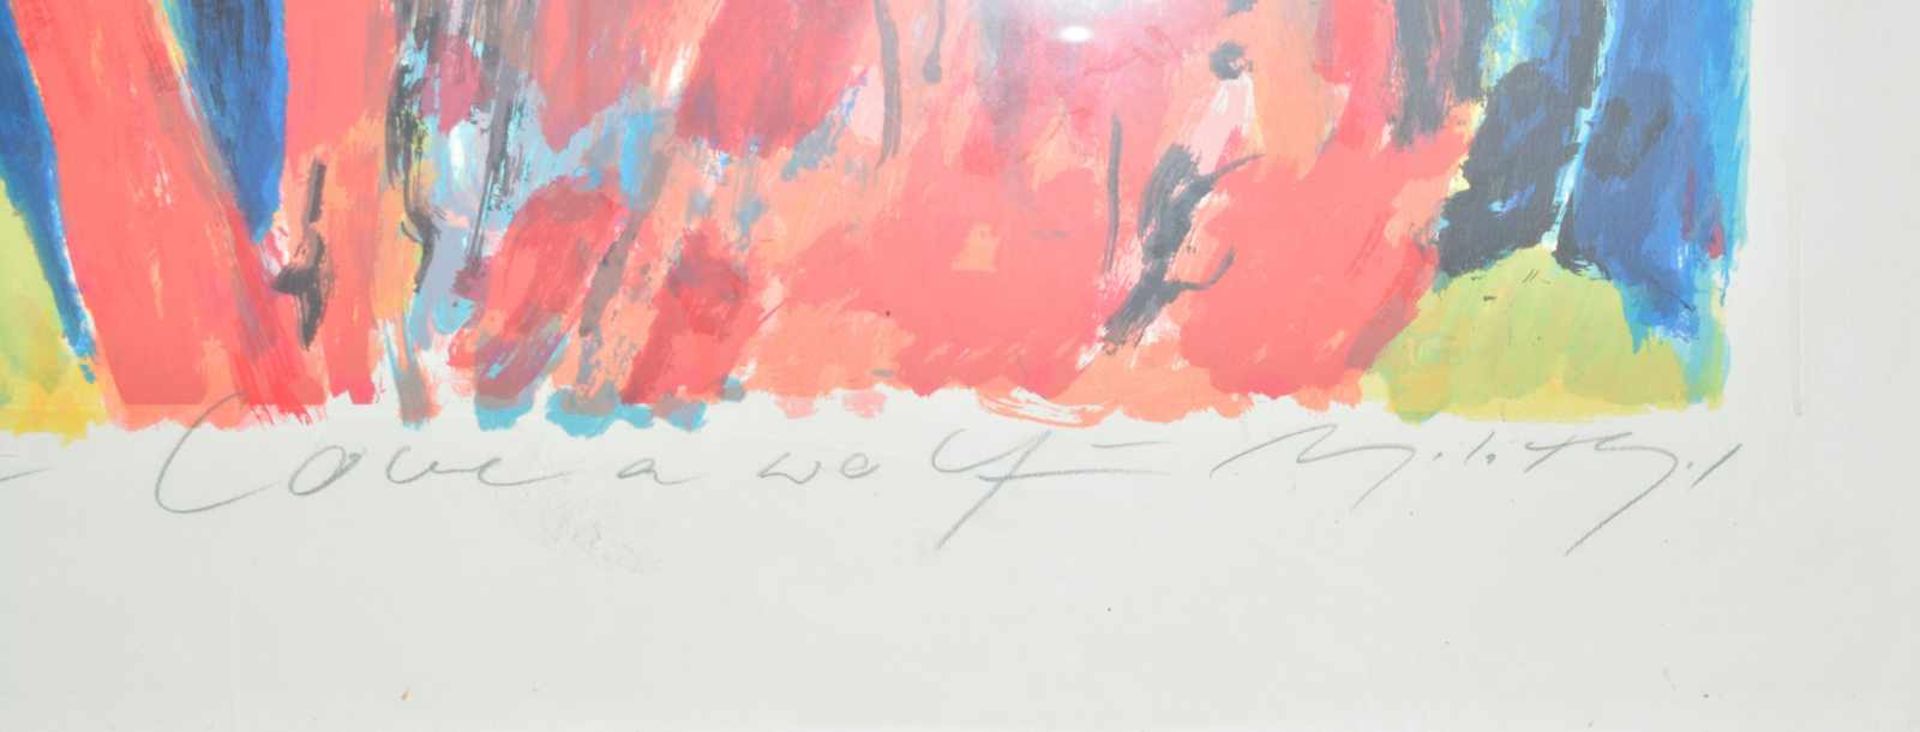 Angela Hampel (1956 Räckelwitz) (F)'Love a wolf', Farbserigrafie auf Bütten, 110 cm x 81 cm - Image 3 of 3